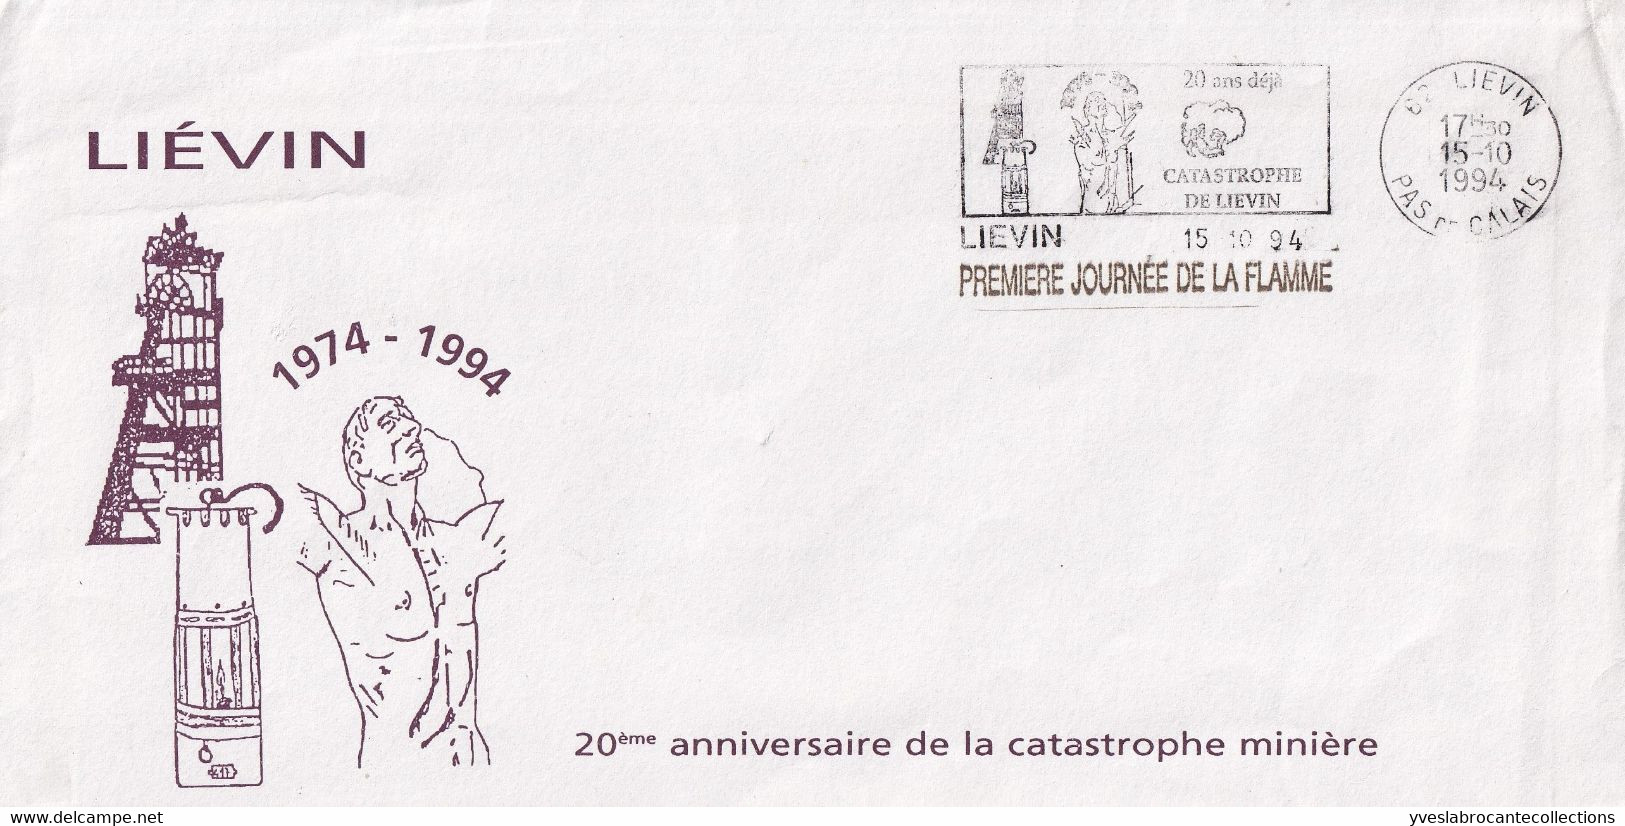 Liévin - 62 -  - Sur Enveloppe Commémorative Catastrophe Minière 1974 -  1ère Journée Flamme 20 Ans Déjà ... -15/10/94 - Annullamenti Meccanici (pubblicitari)